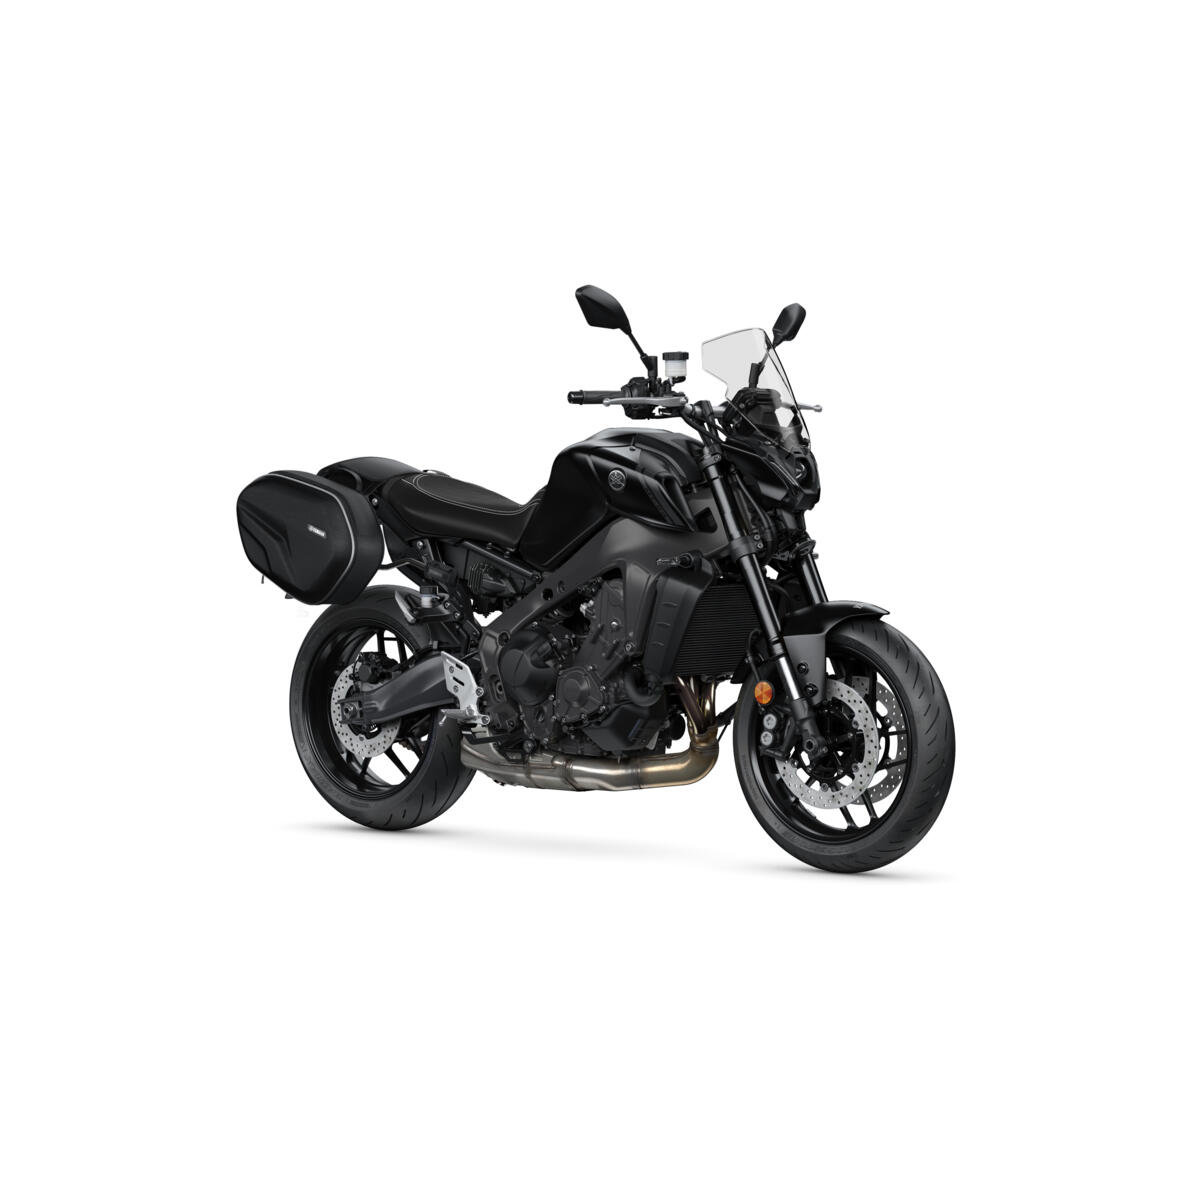 Díky přirozené poloze jezdce a vynikajícímu dojezdu je MT-09 ideální stroj na víkendové vyjížďky. 
Společnost Yamaha proto vytvořila balíček Weekend Pack, se kterým si můžete dokonale užít každou minutu svého času, ať už na motocyklu, nebo jinak.